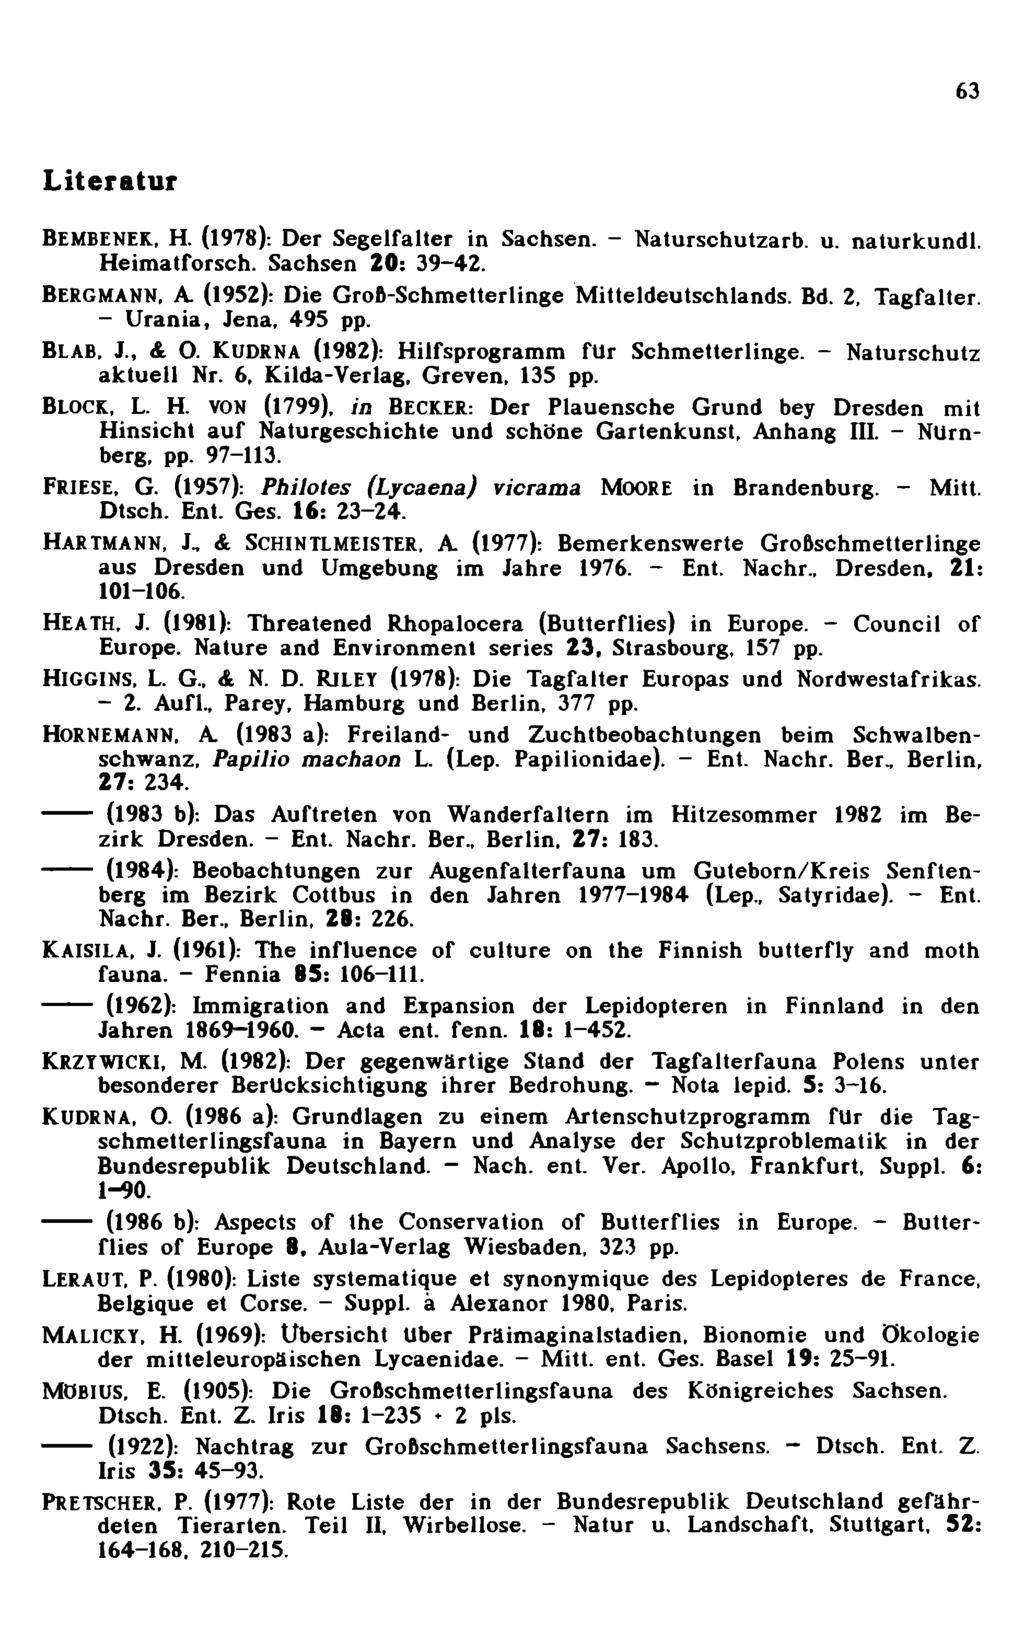 63 Literatur Bembenek, H. (1978): Der Segelfalter in Sachsen. - N aturschutzarb. u. naturkundl. H eim atforsch. Sachsen 20: 39-42. BERGMANN, A. (1952): Die G roß-schm etterlinge M itteldeutschlands.